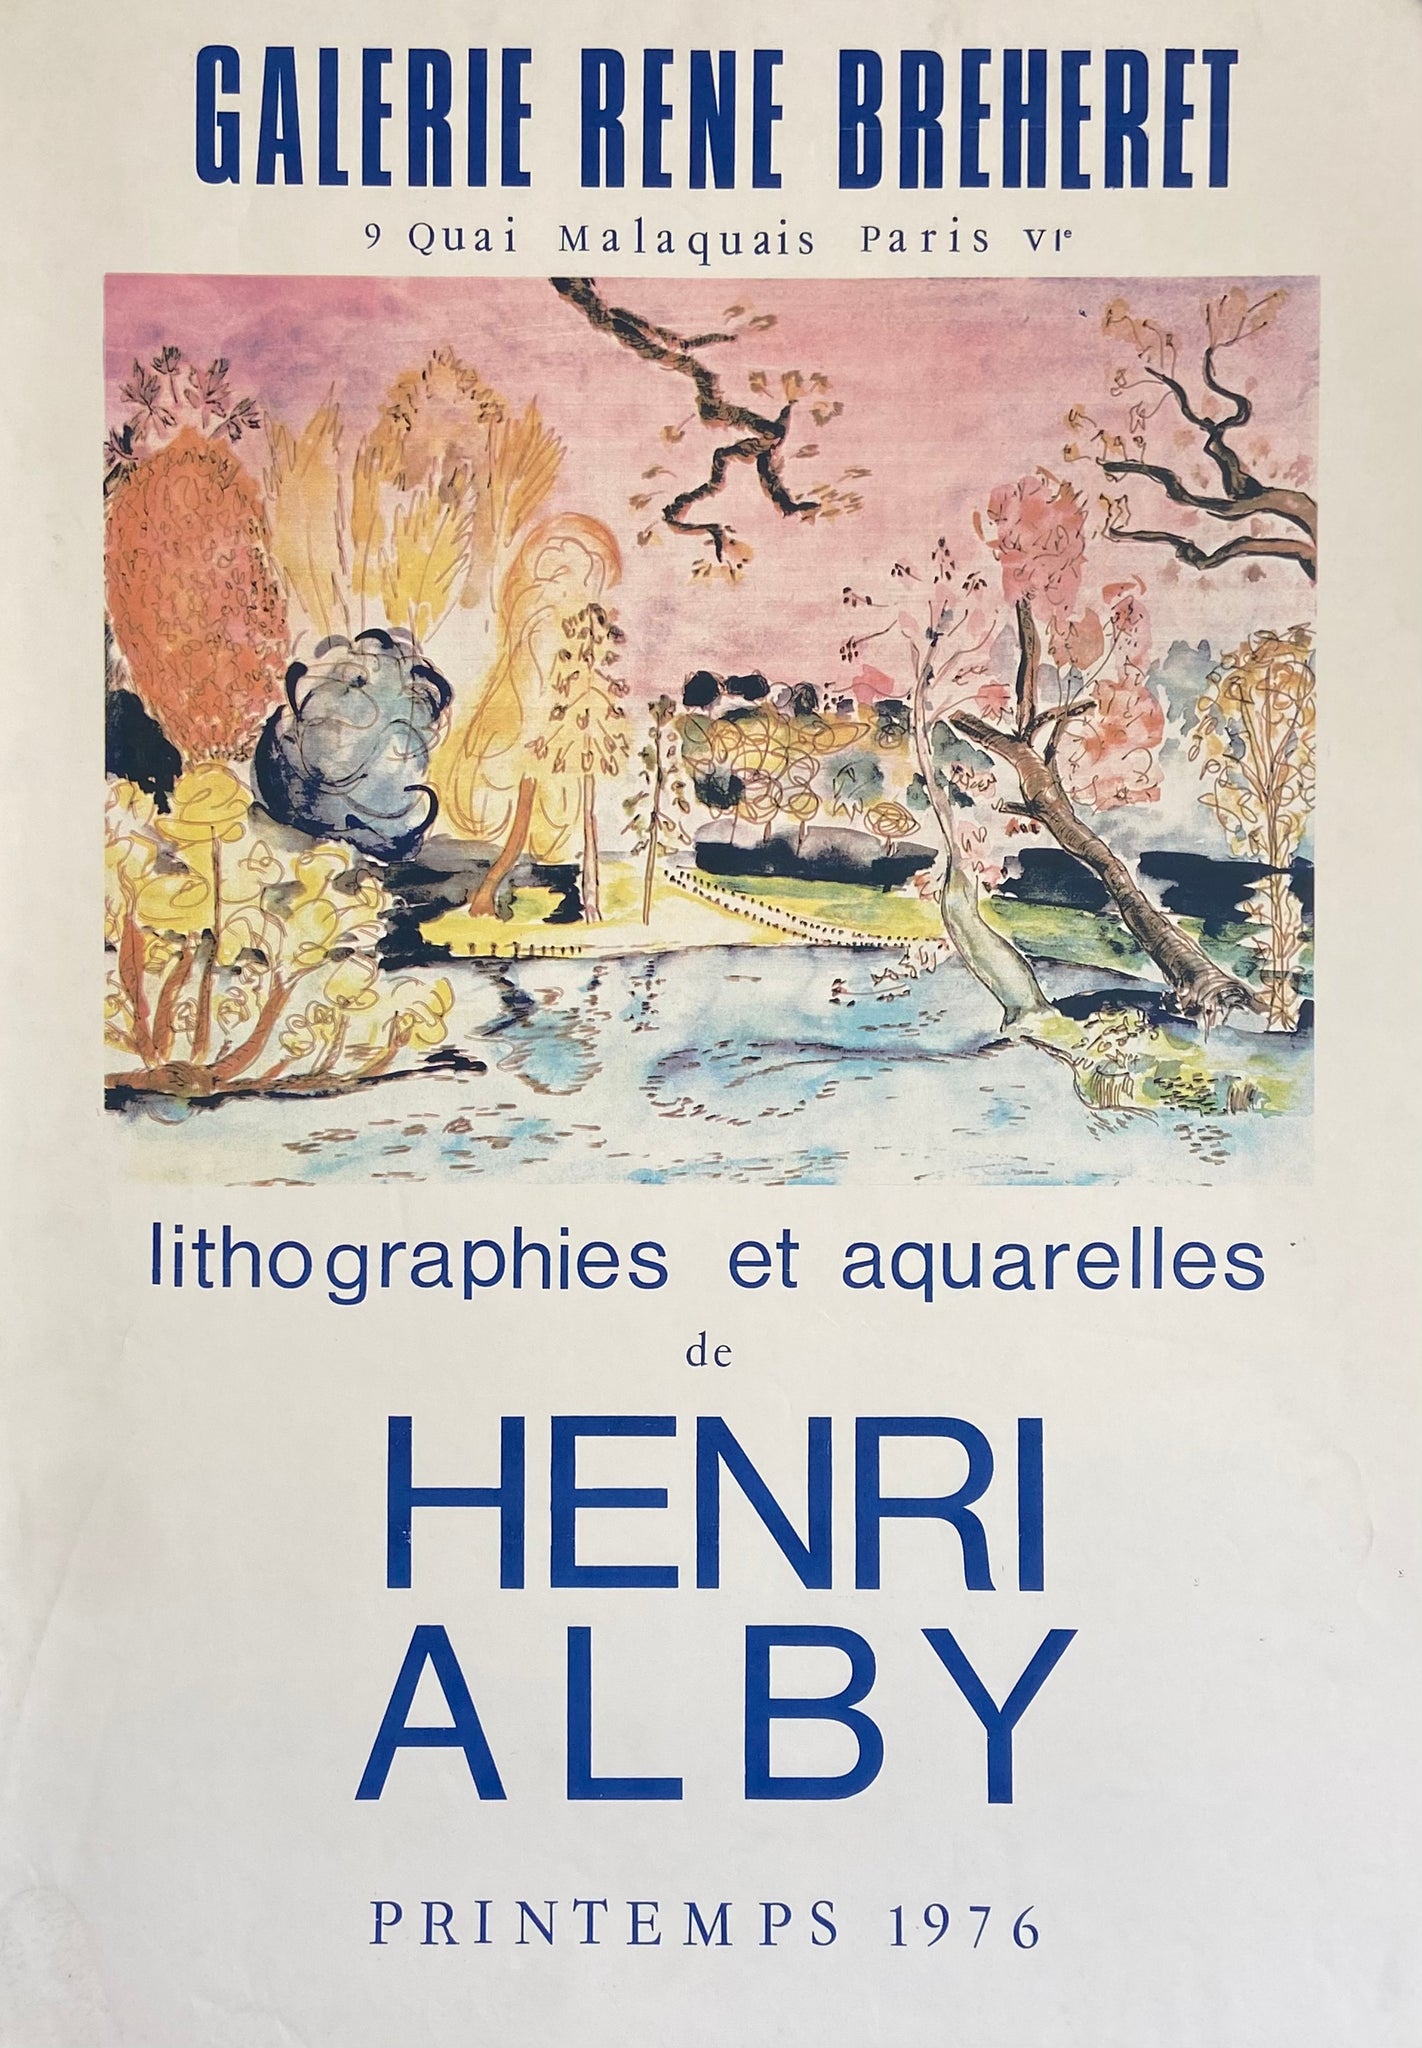 Affiche Galerie René Breheret Par Henri Alby, 1976